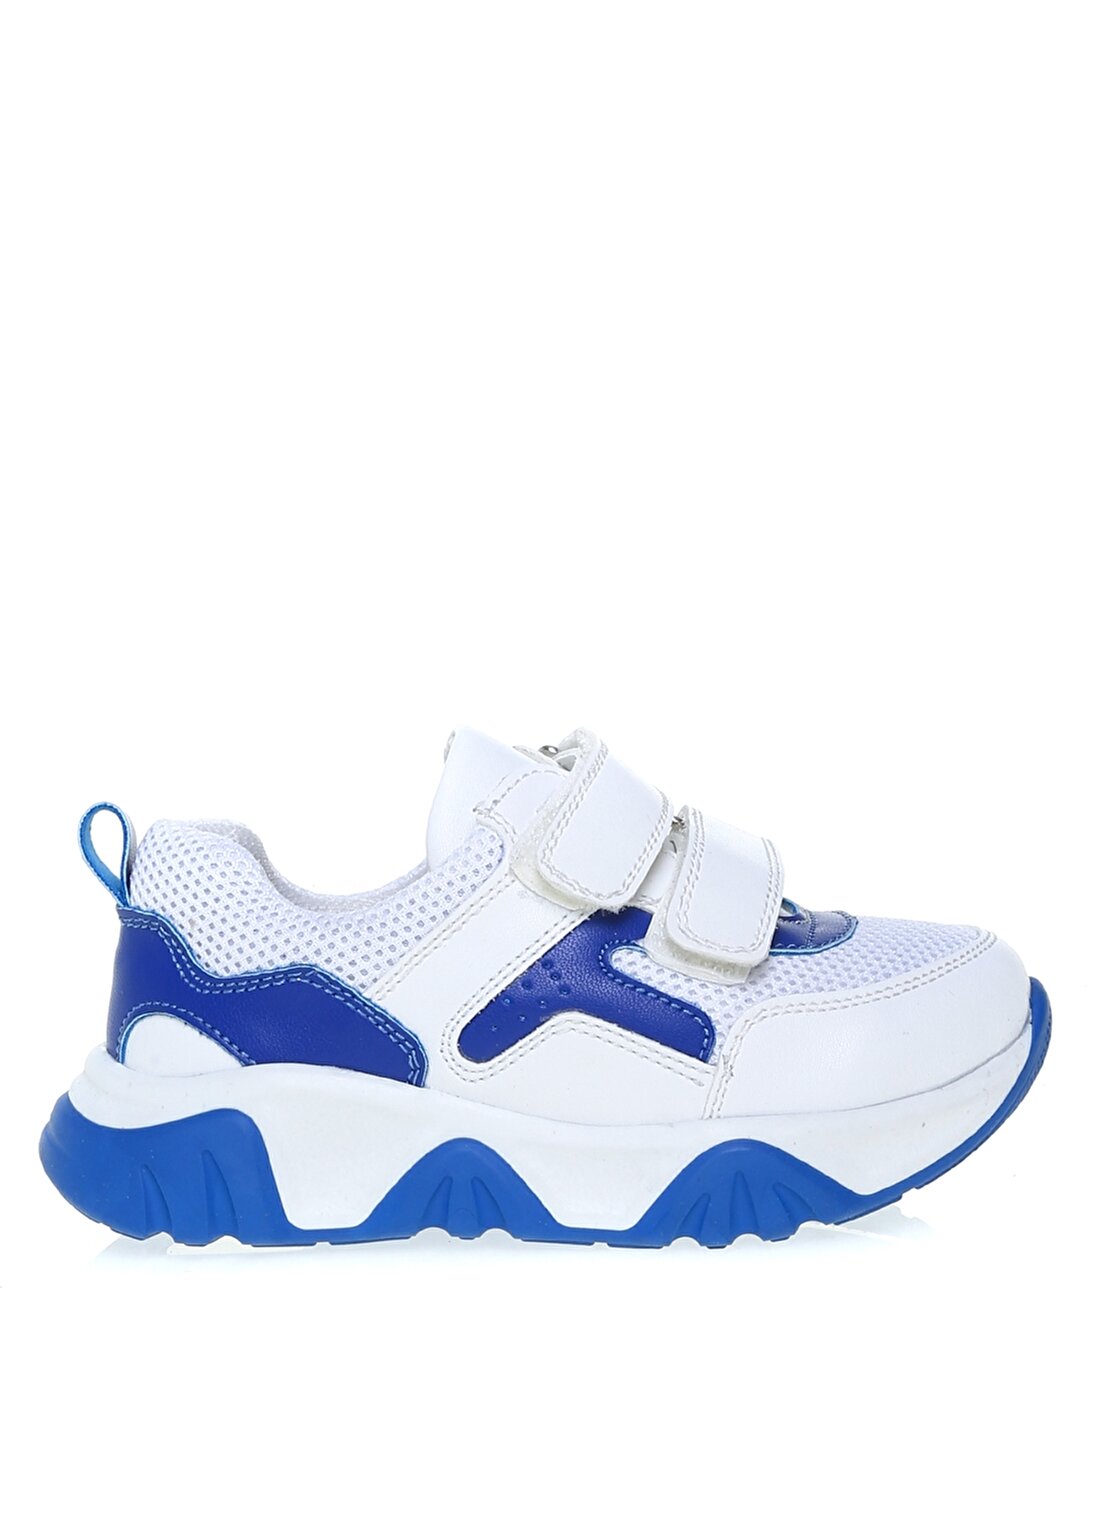 Limon Beyaz - Mavi Erkek Çocuk Yürüyüş Ayakkabısı LEPARDE